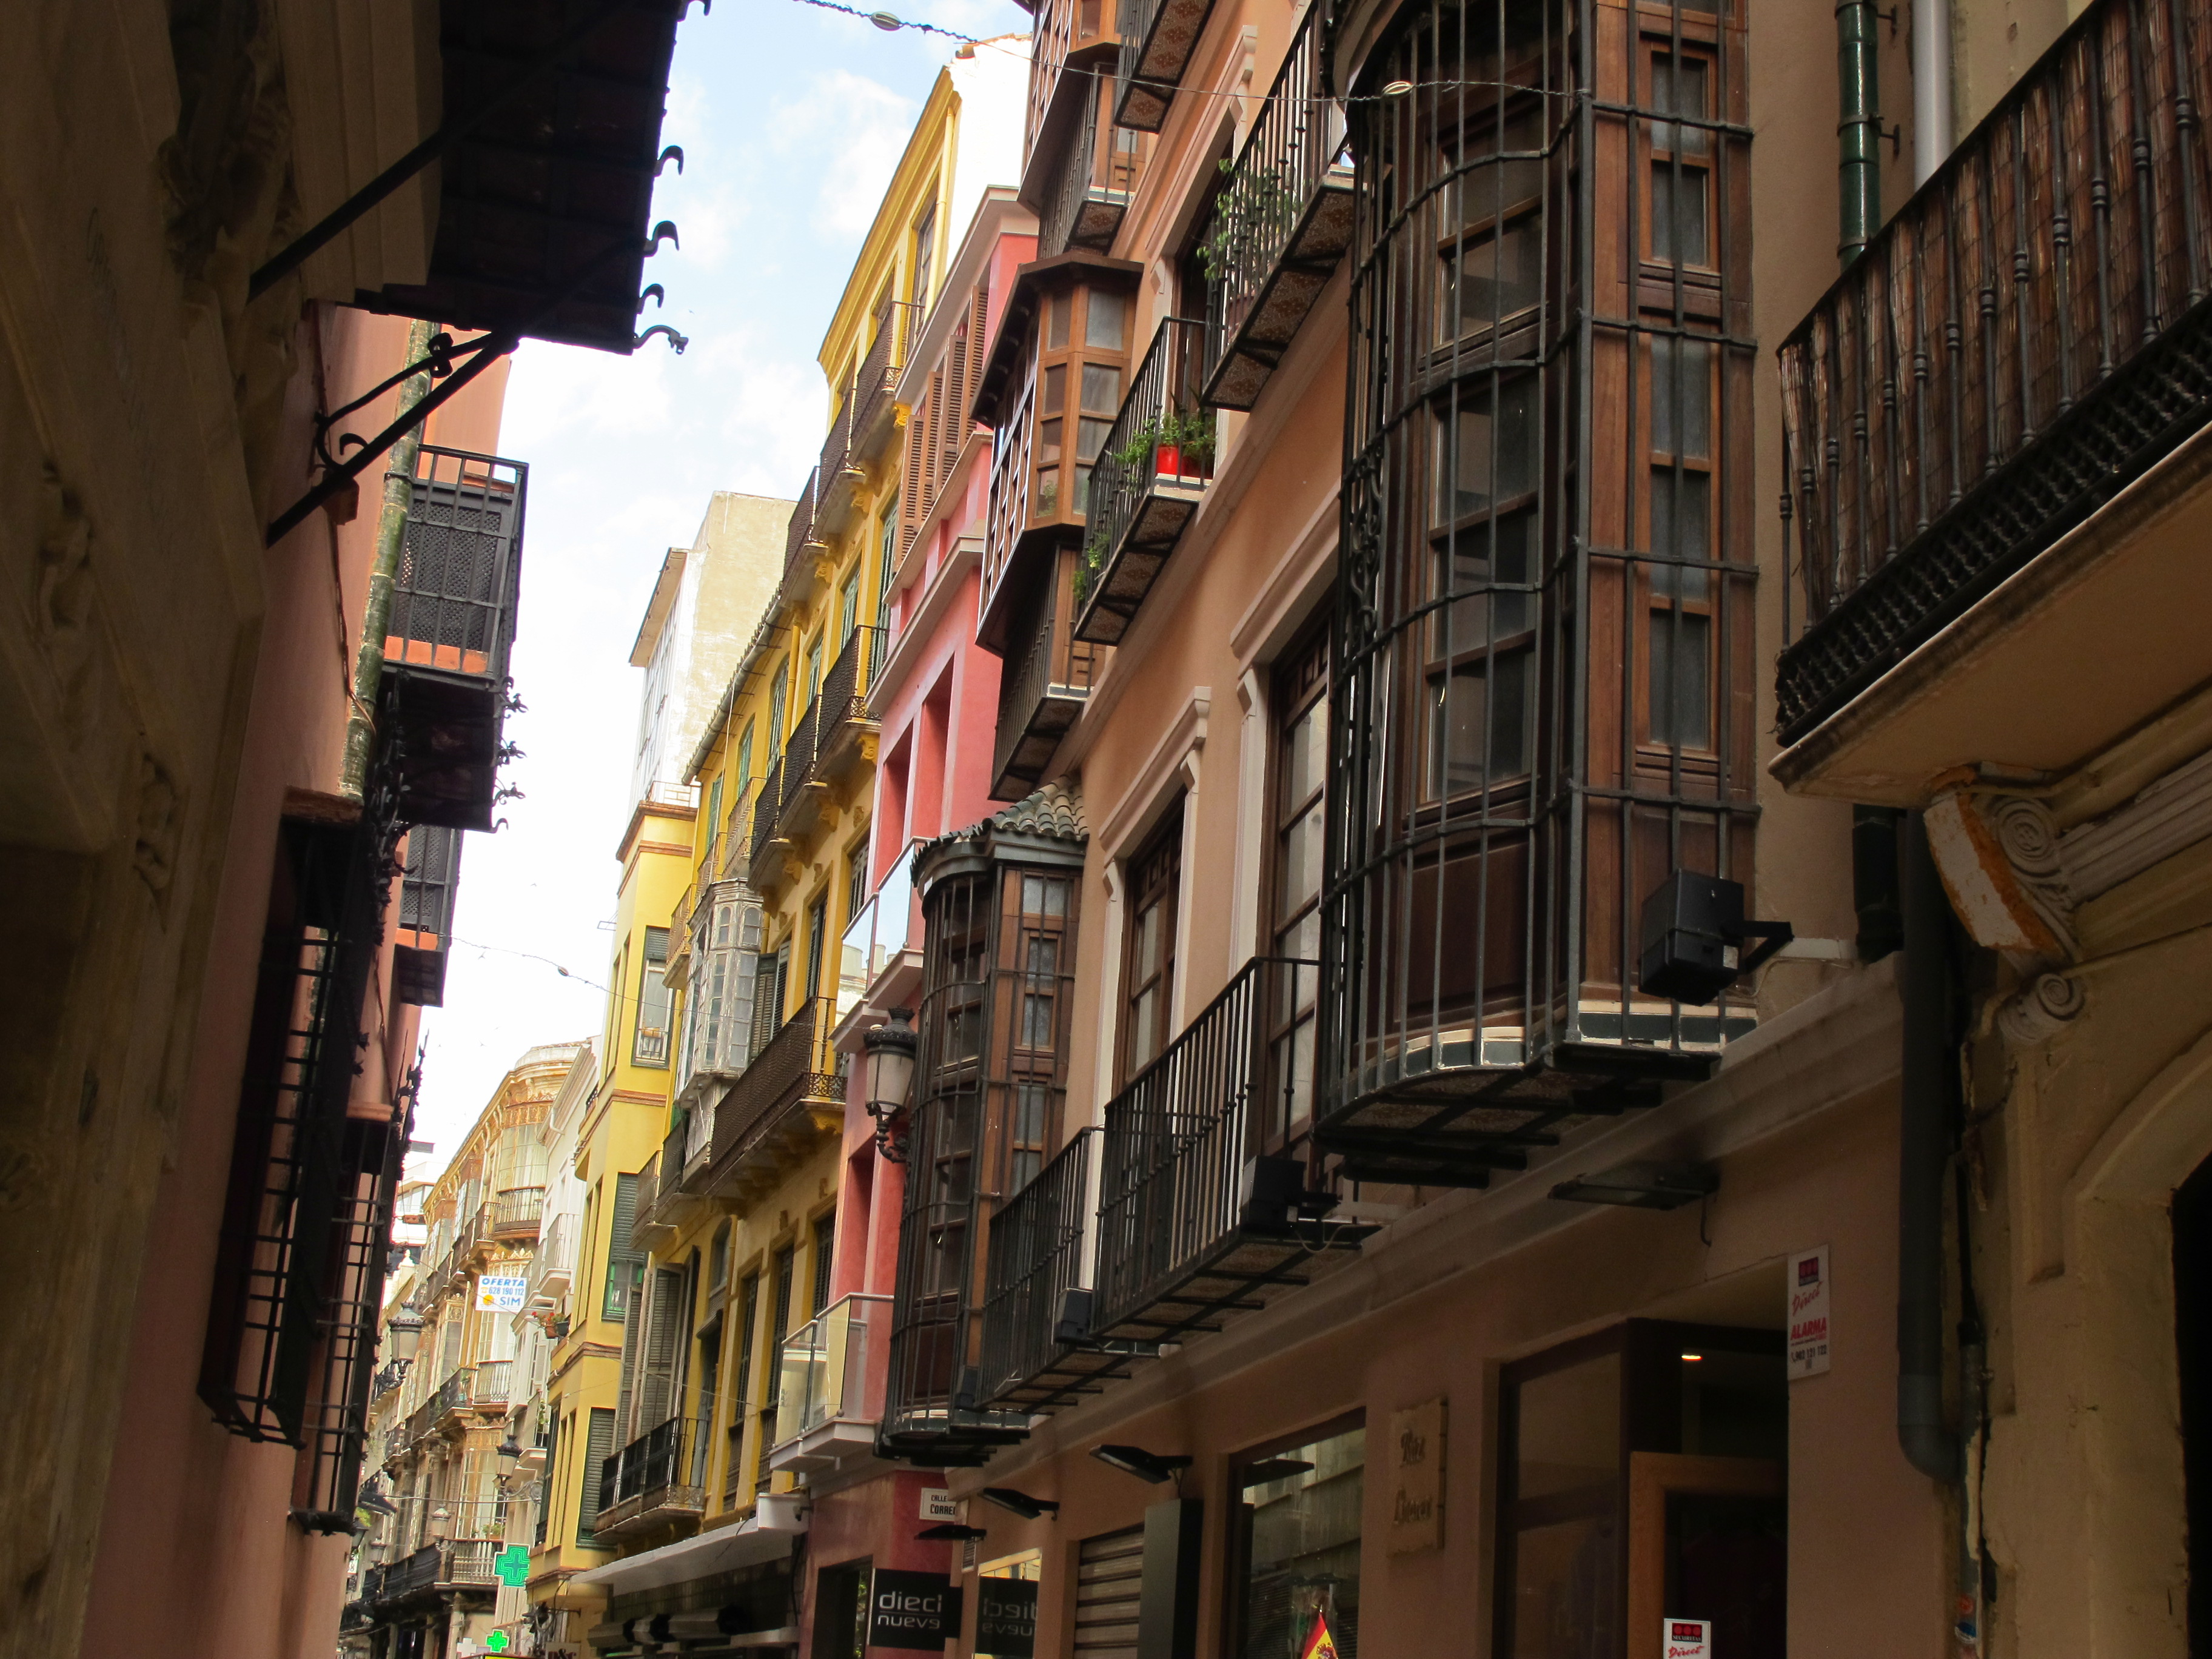 Visita guiada calles de Malaga